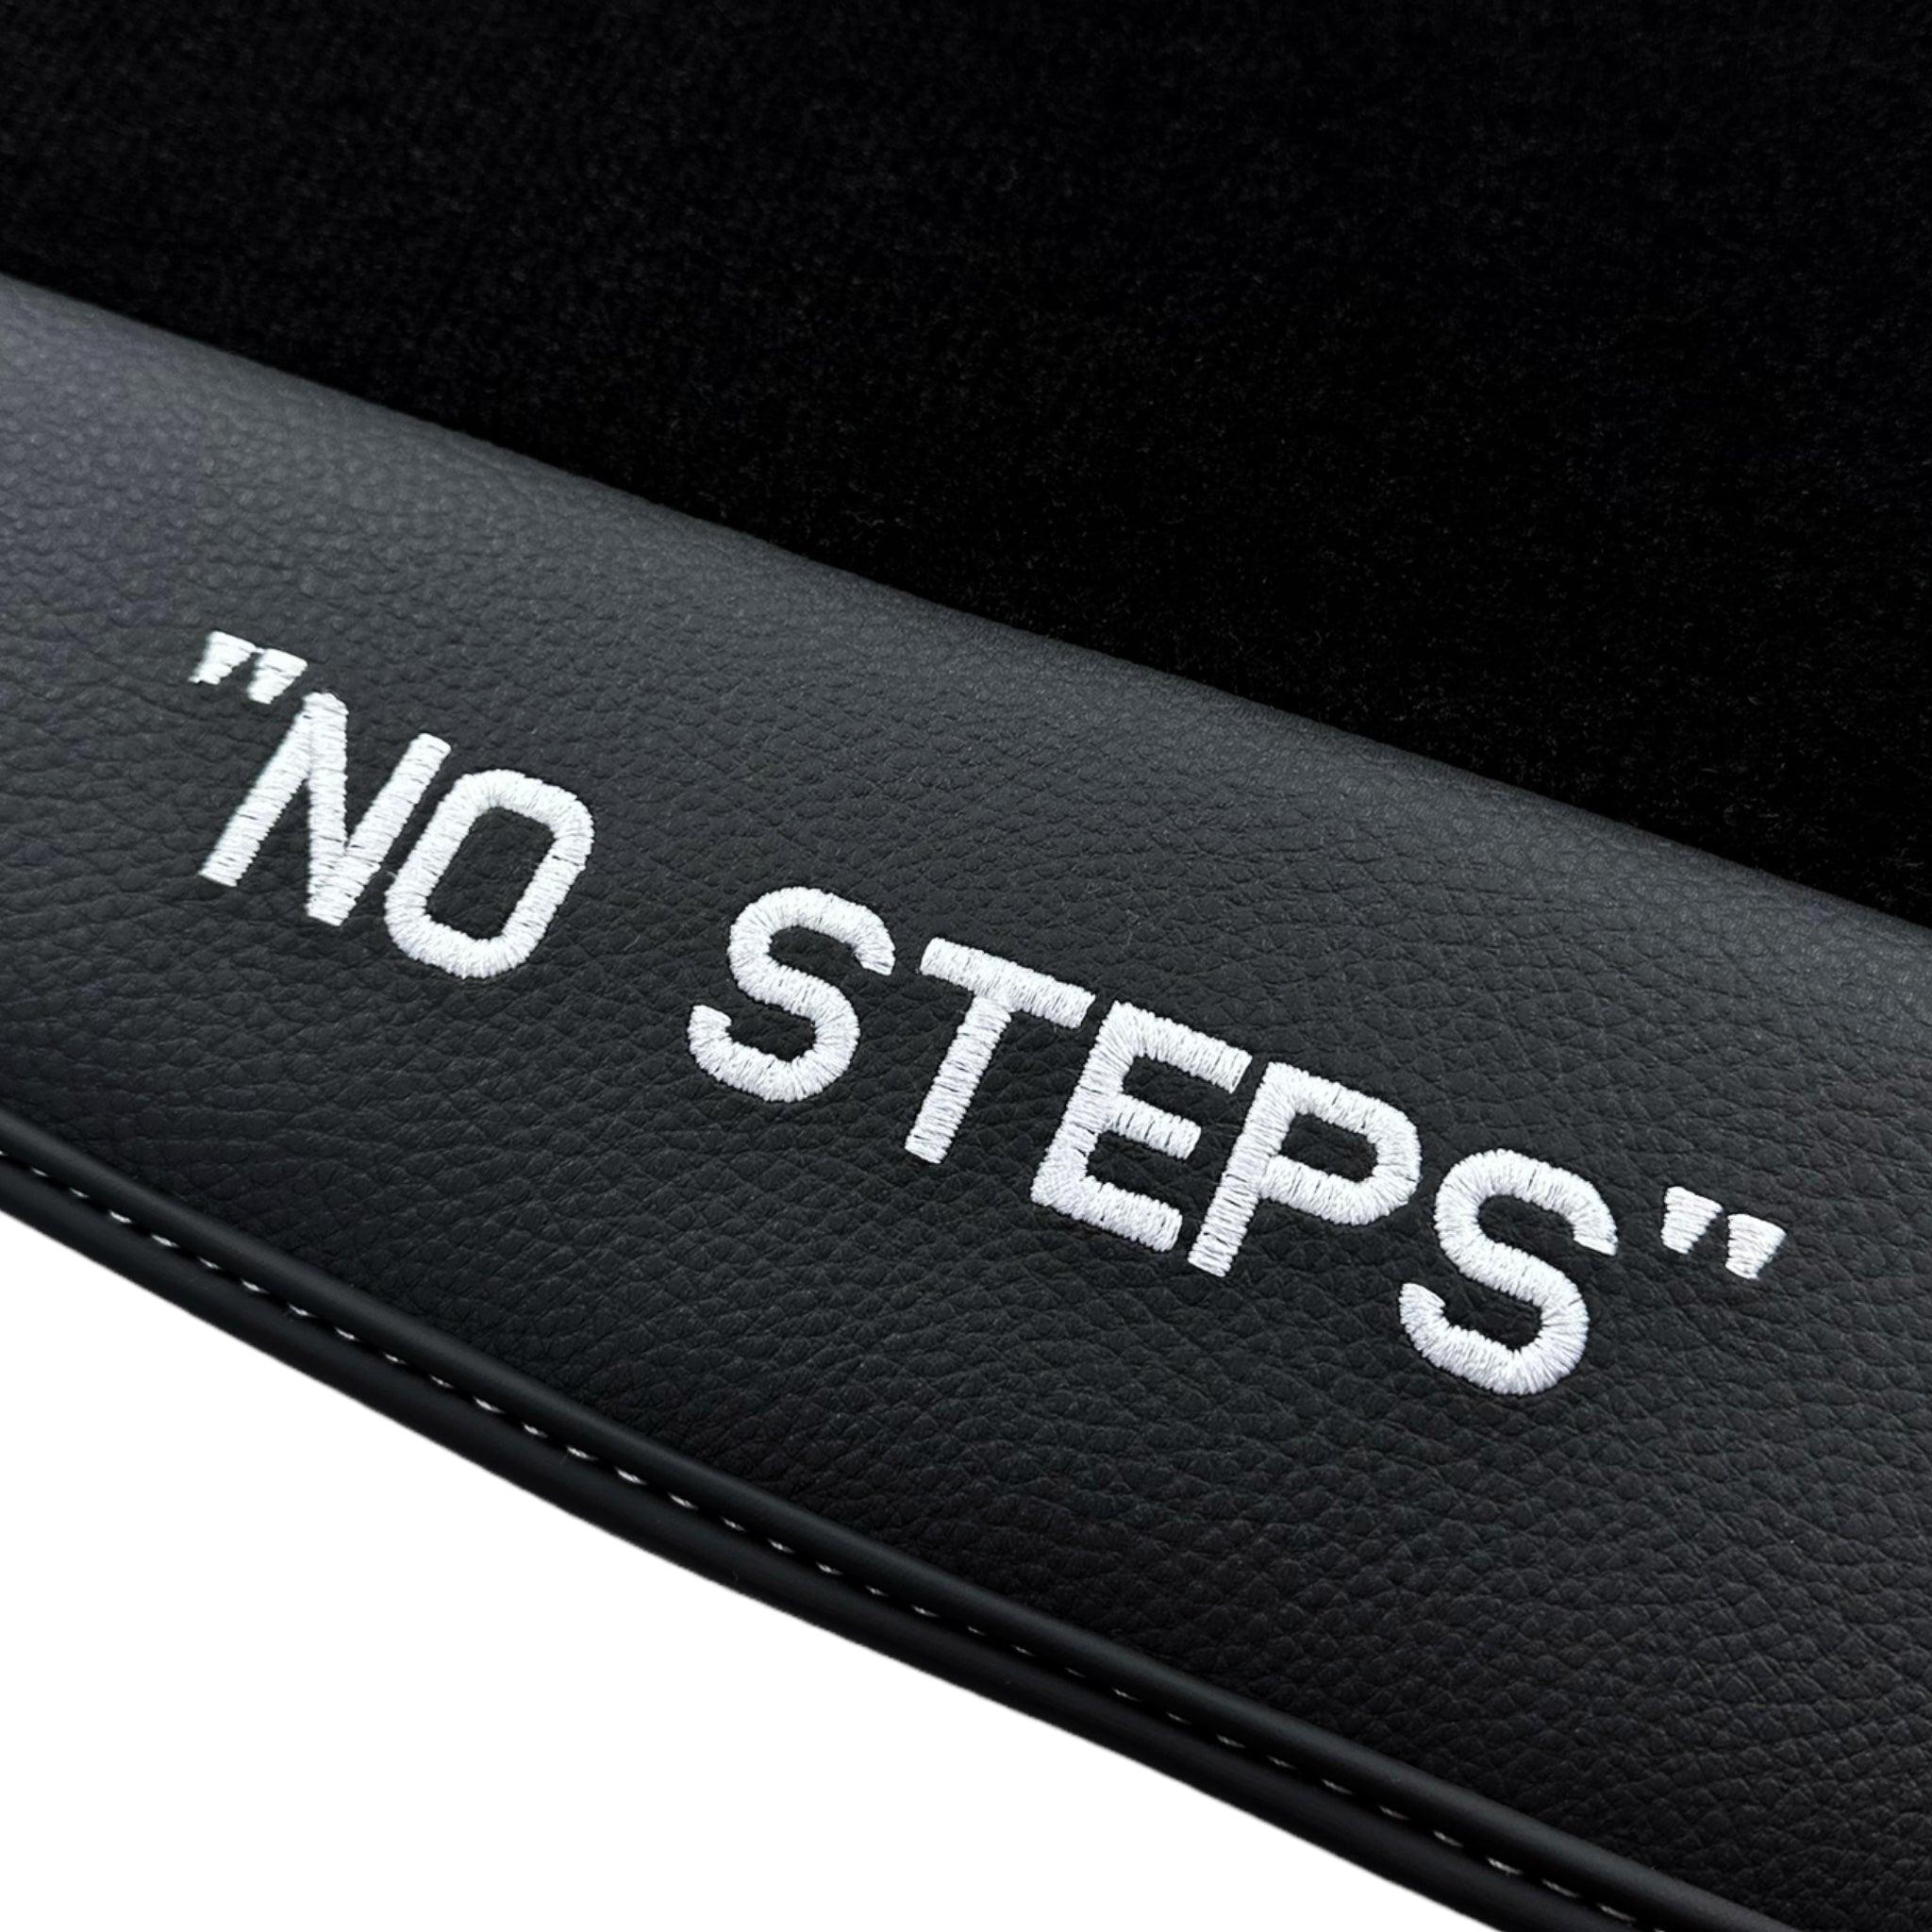 Black Floor Mats for Audi A3 - 3-door Hatchback (2013-2020) | No Steps Edition